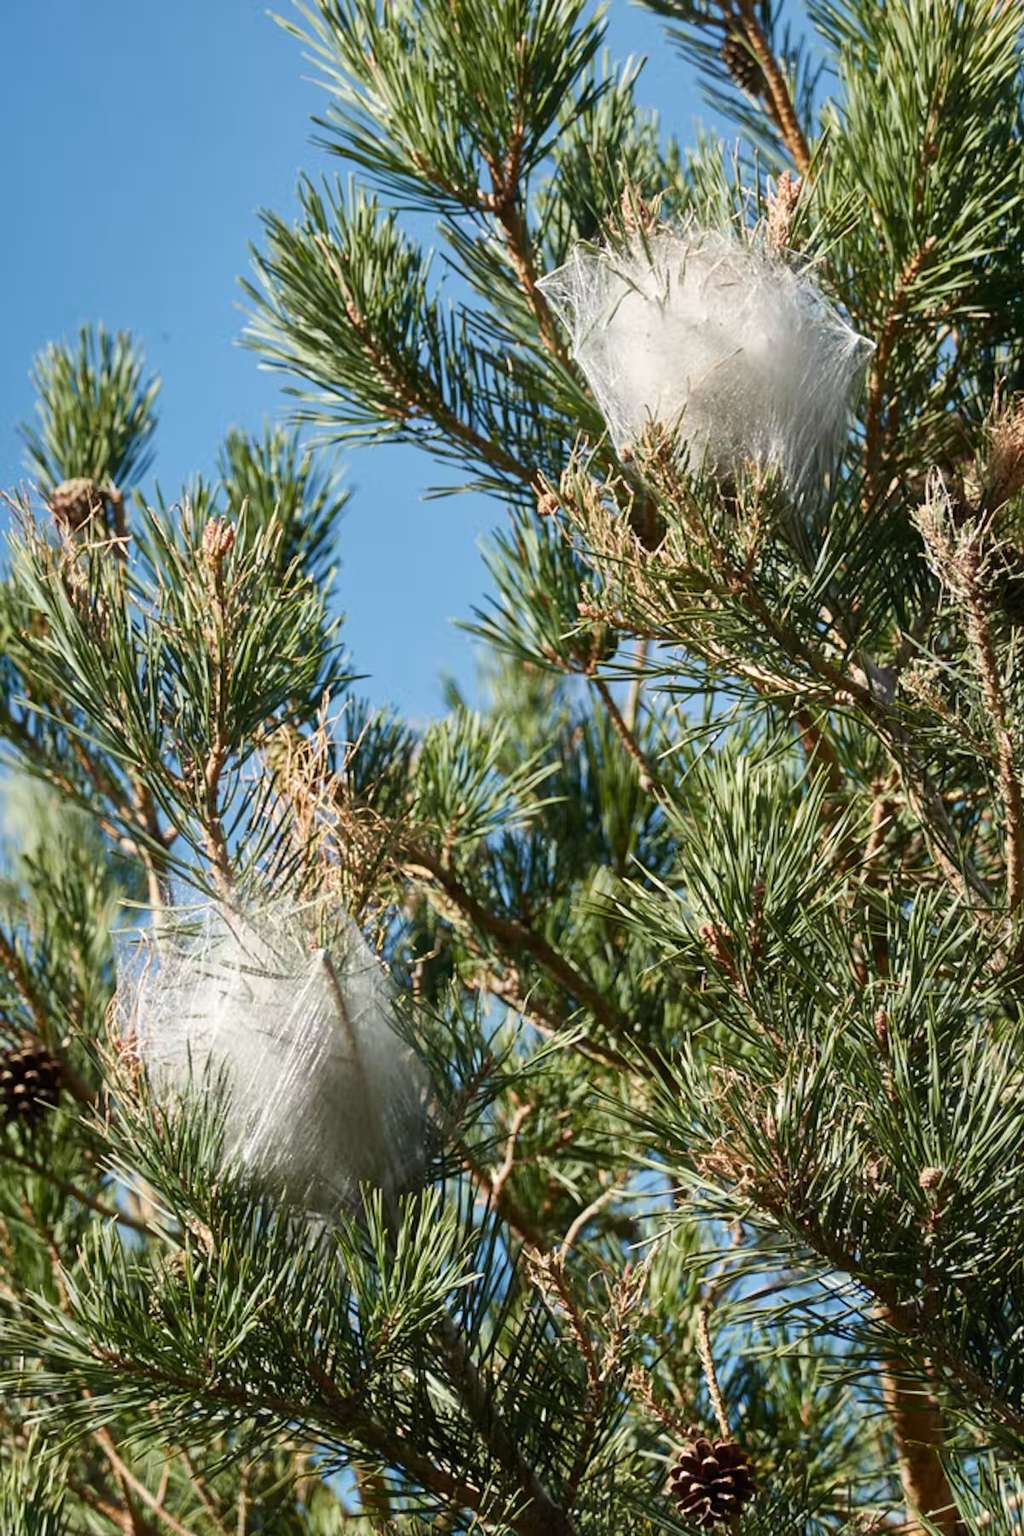 Les nids eux-mêmes peuvent contenir des poils urticants. Il faut contacter des spécialistes pour s’en débarrasser. © JaviJ, Shutterstock